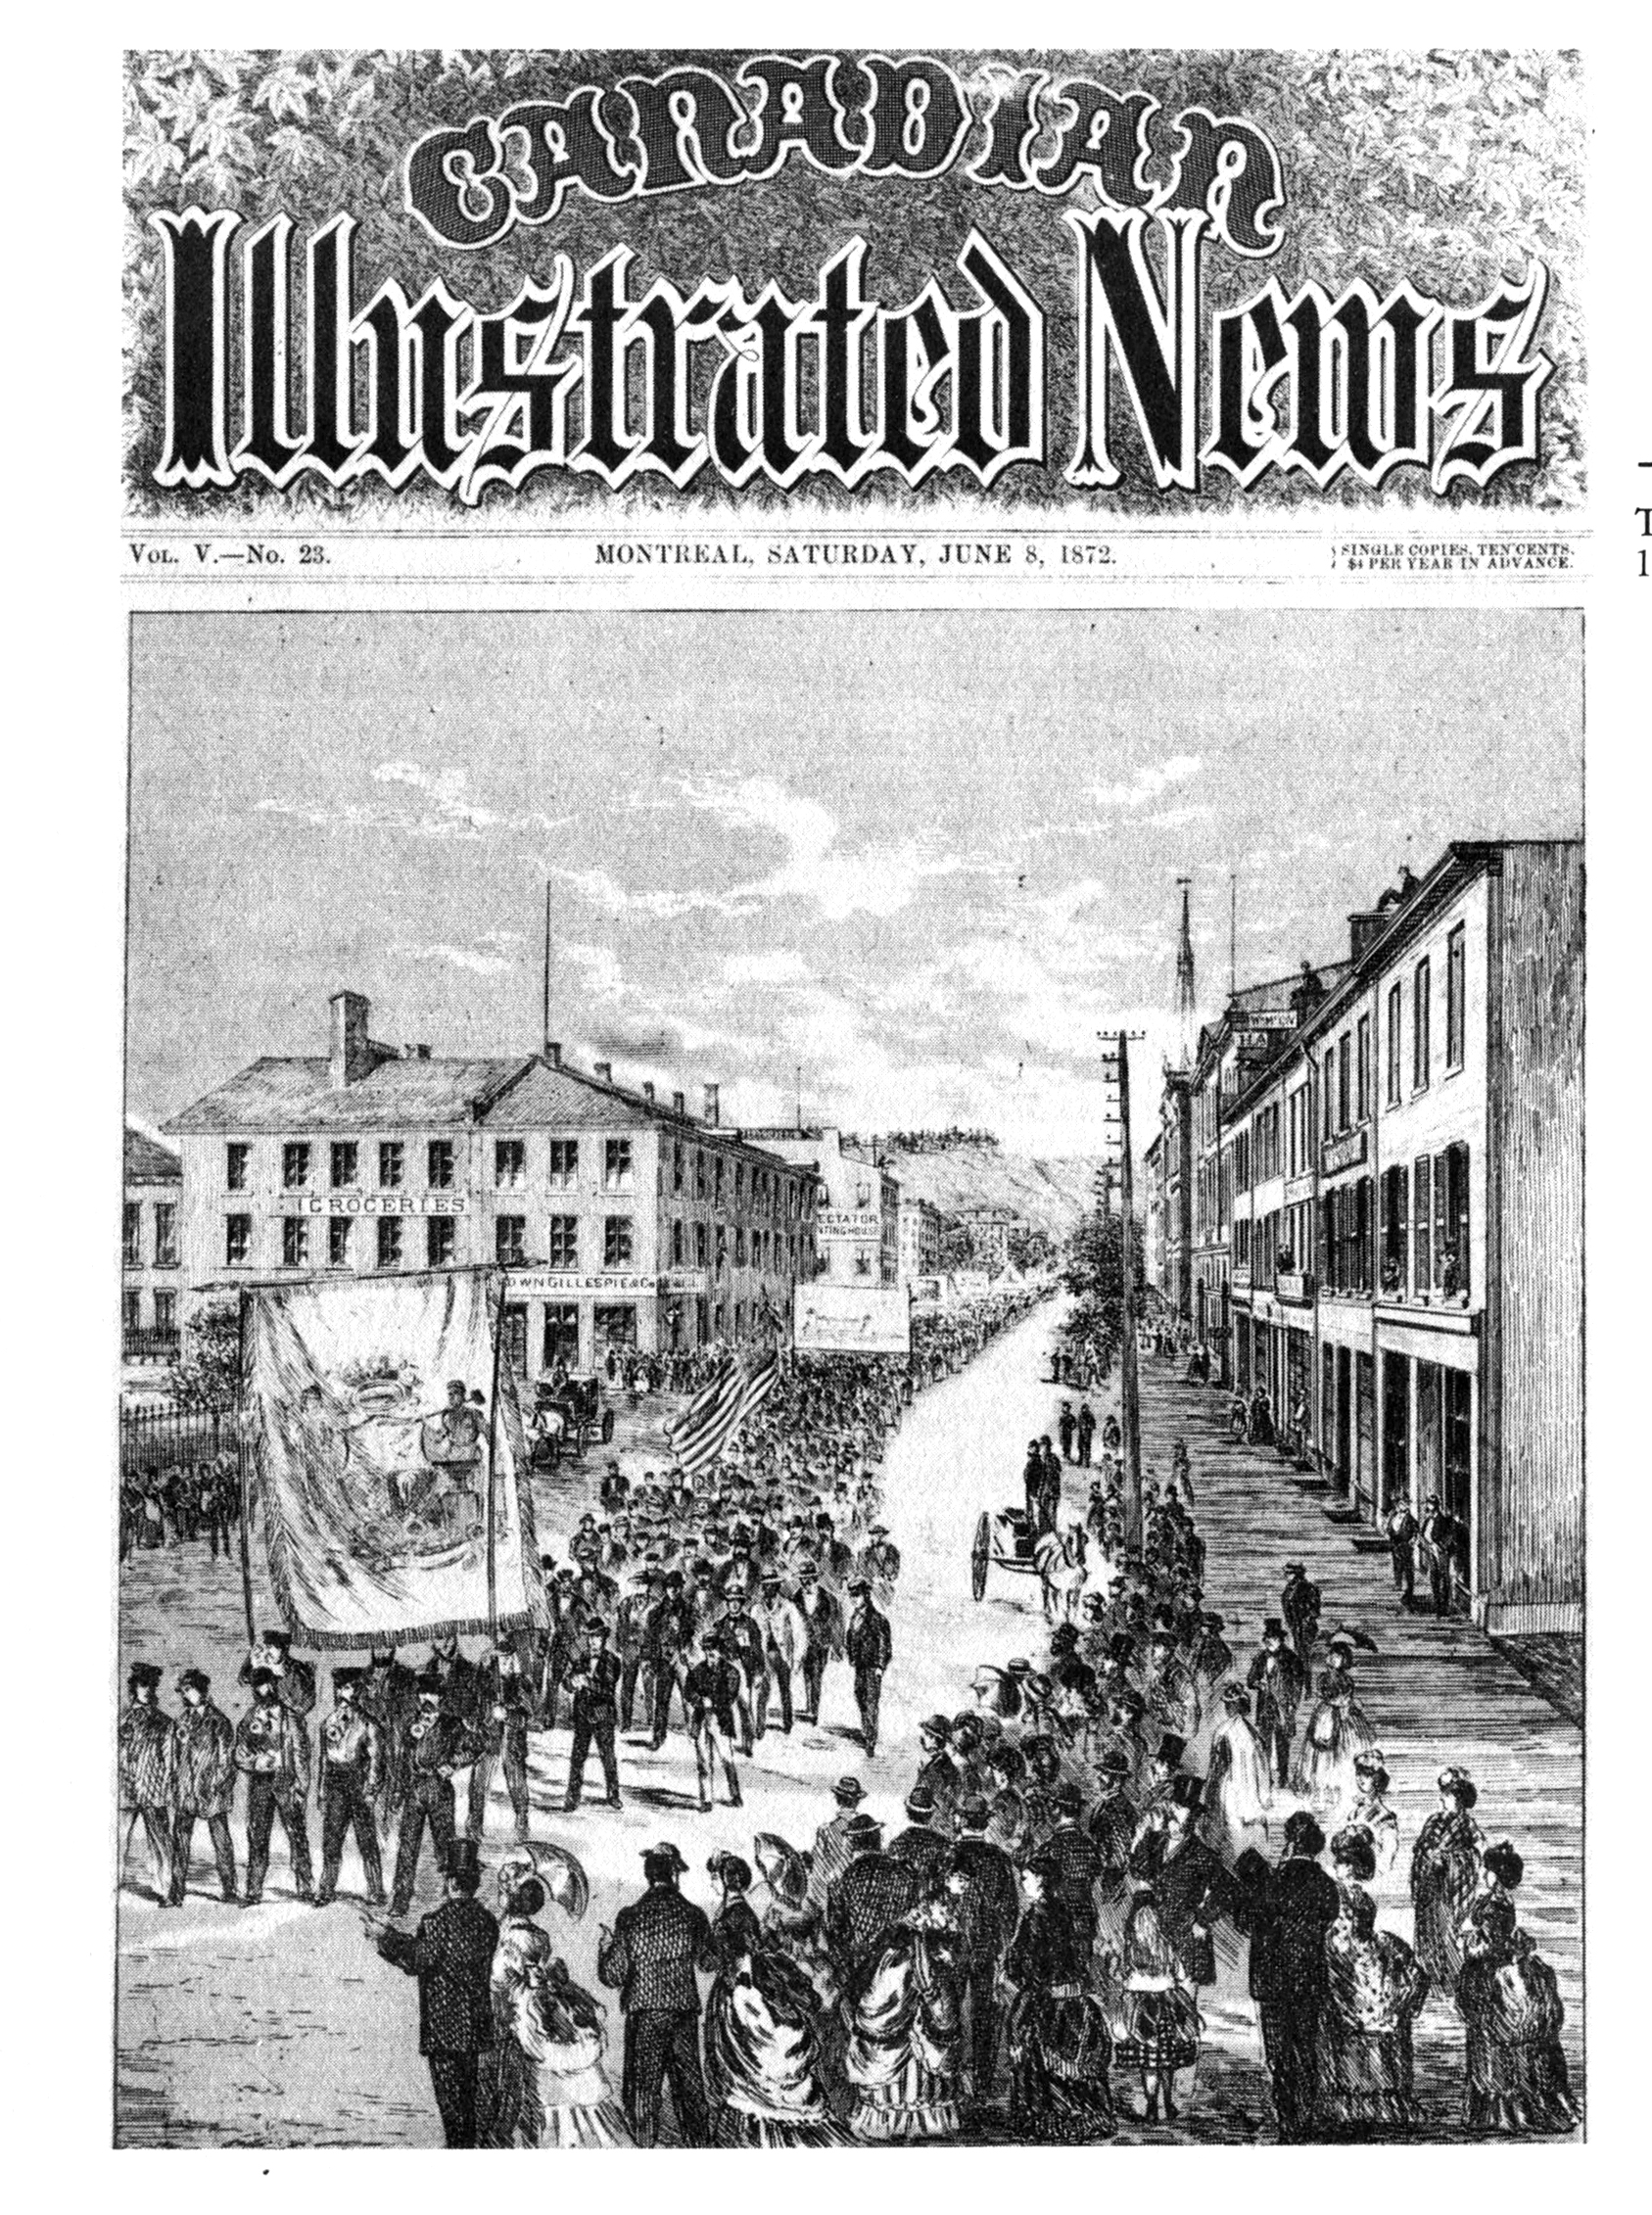 Couverture du magazine Canadian Illustrated News (numéro du 8 juin 1872) montrant le défilé des travailleurs du 15 mai 1872. On peut y voir une foule de spectateurs amassés sur les trottoirs alors que des centaines de travailleurs défilent, brandissant de grandes banderoles et des drapeaux dans la rue.